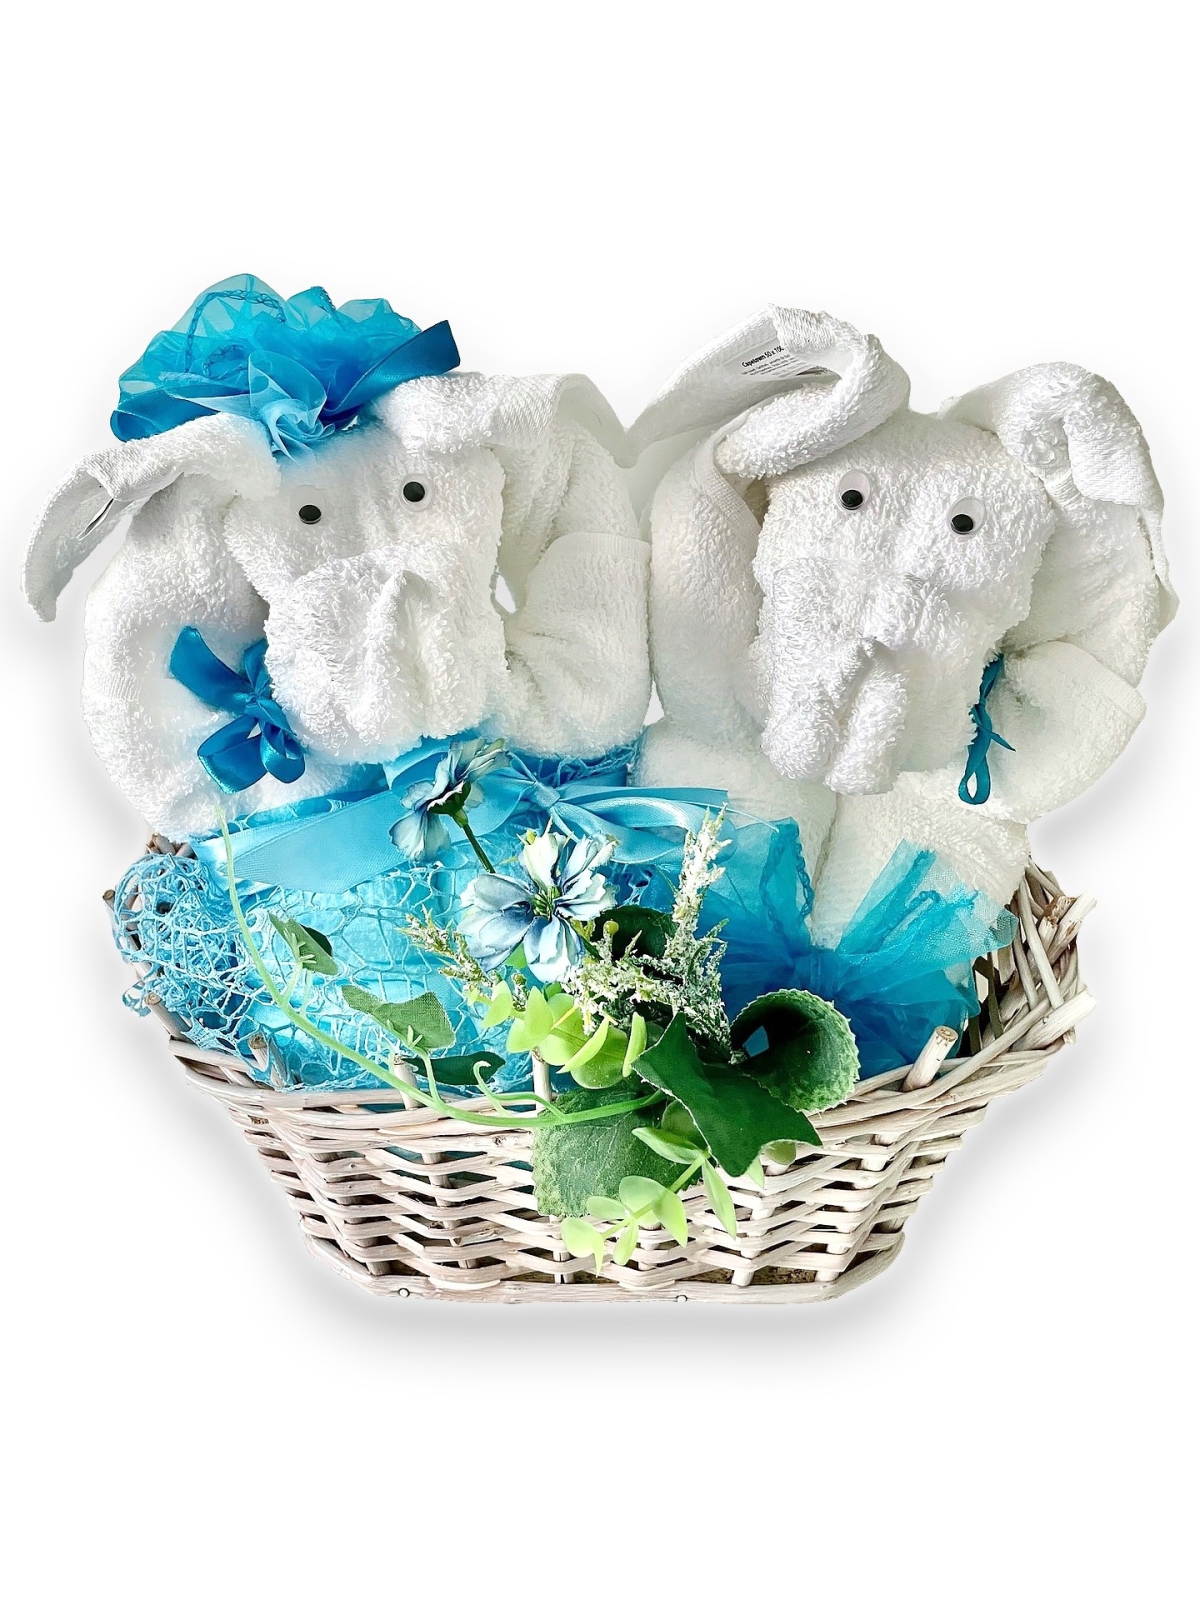 Zestaw Prezentowy Słonie z czterech ręczników - BLUE